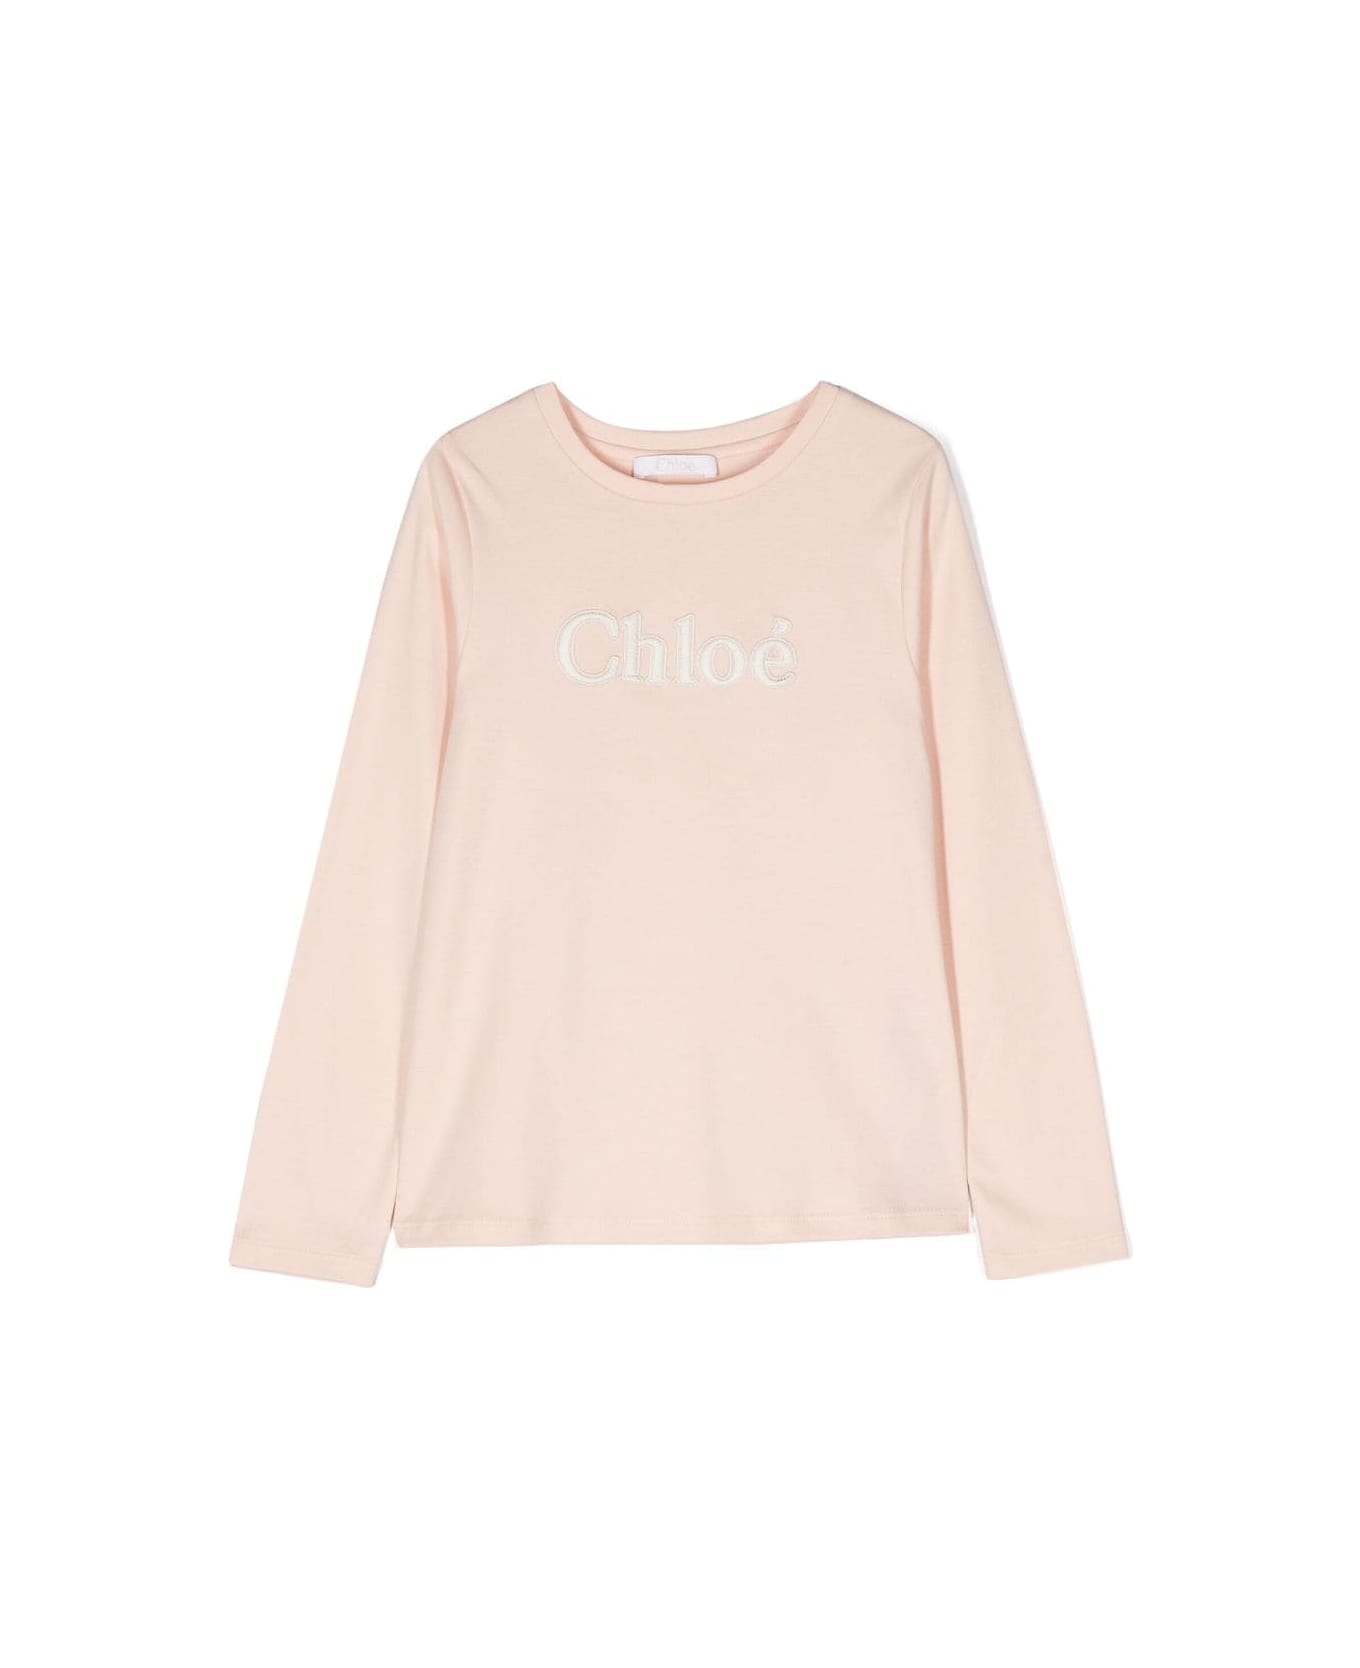 Chloé Chloe T-shirt Bianca Cipria In Jersey Di Cotone Bambina - Bianco Tシャツ＆ポロシャツ